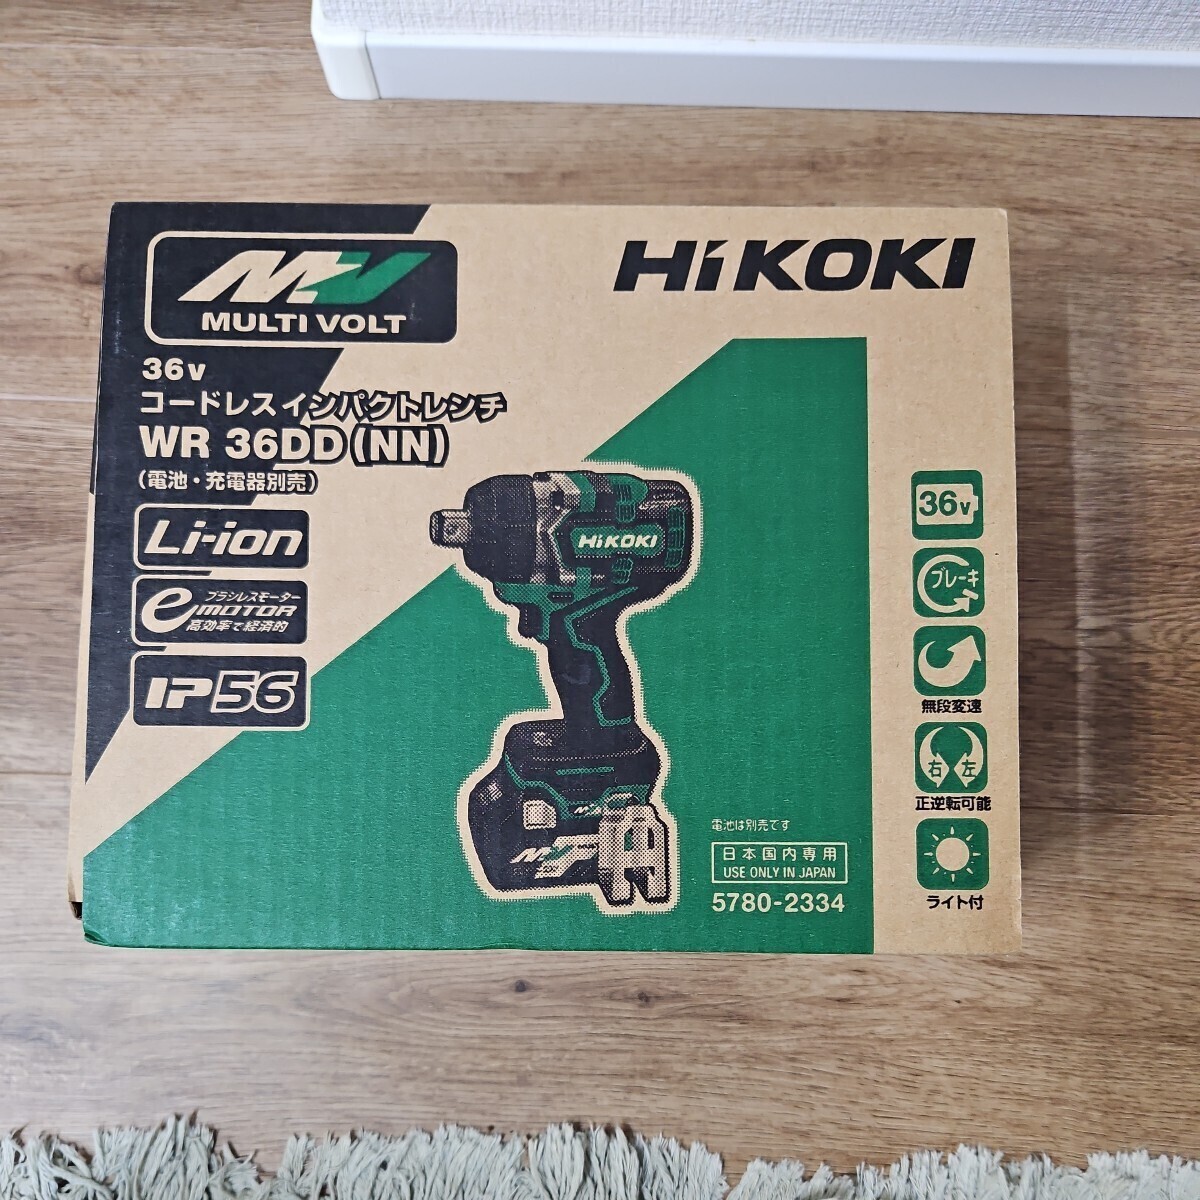  новый товар * не использовался товар HiKOKI высокий ko-kiWR36DD (NN) беспроводной ударный гайковерт ( батарейка * зарядное устройство продается отдельно ) мульти- болт *